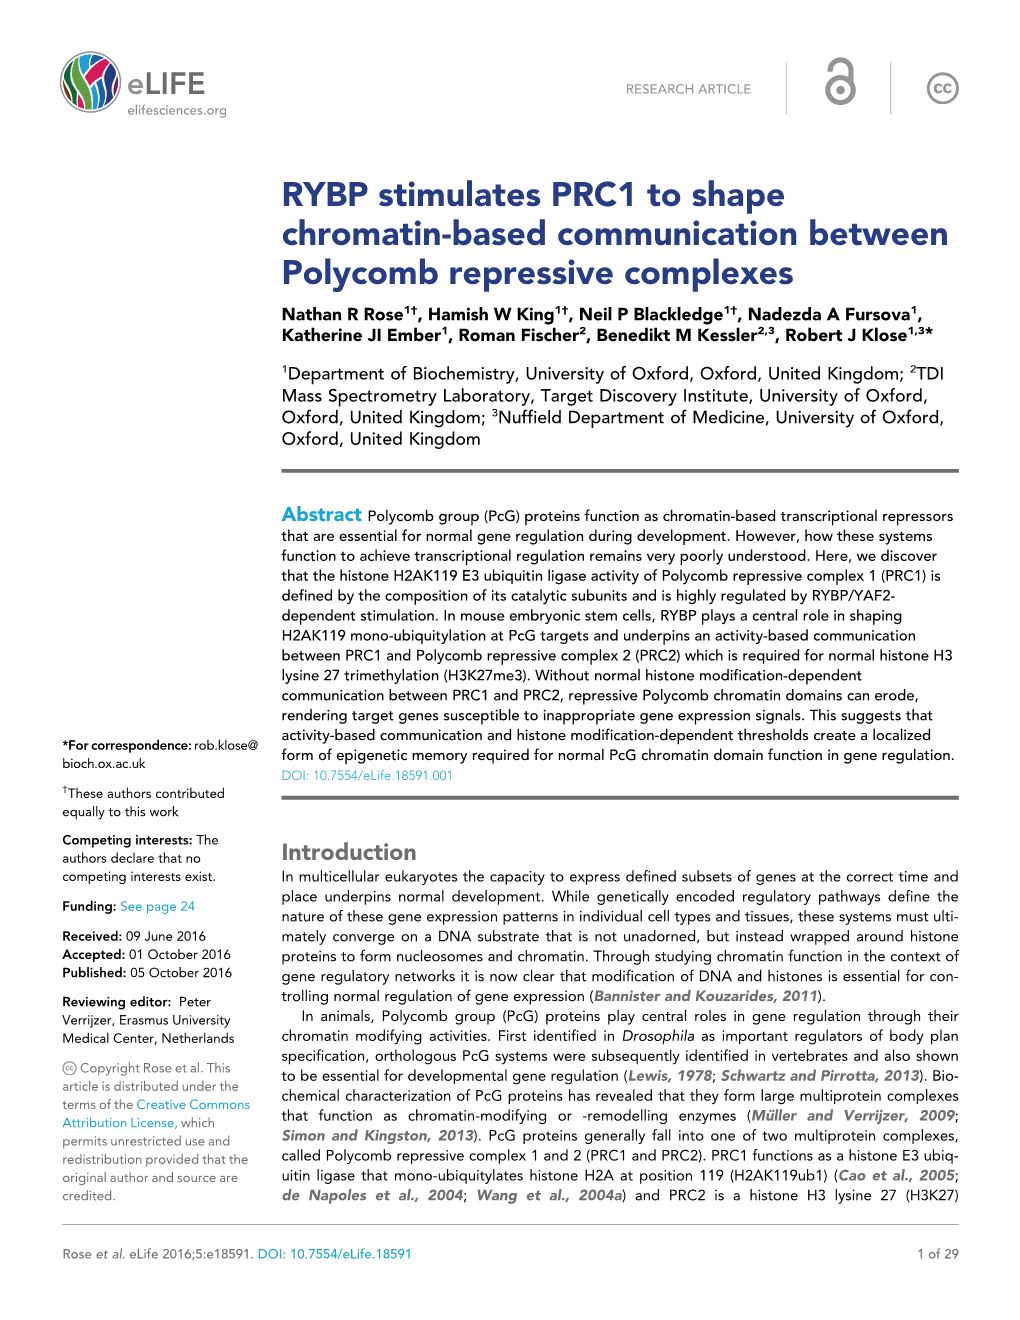 RYBP Stimulates PRC1 to Shape Chromatin-Based